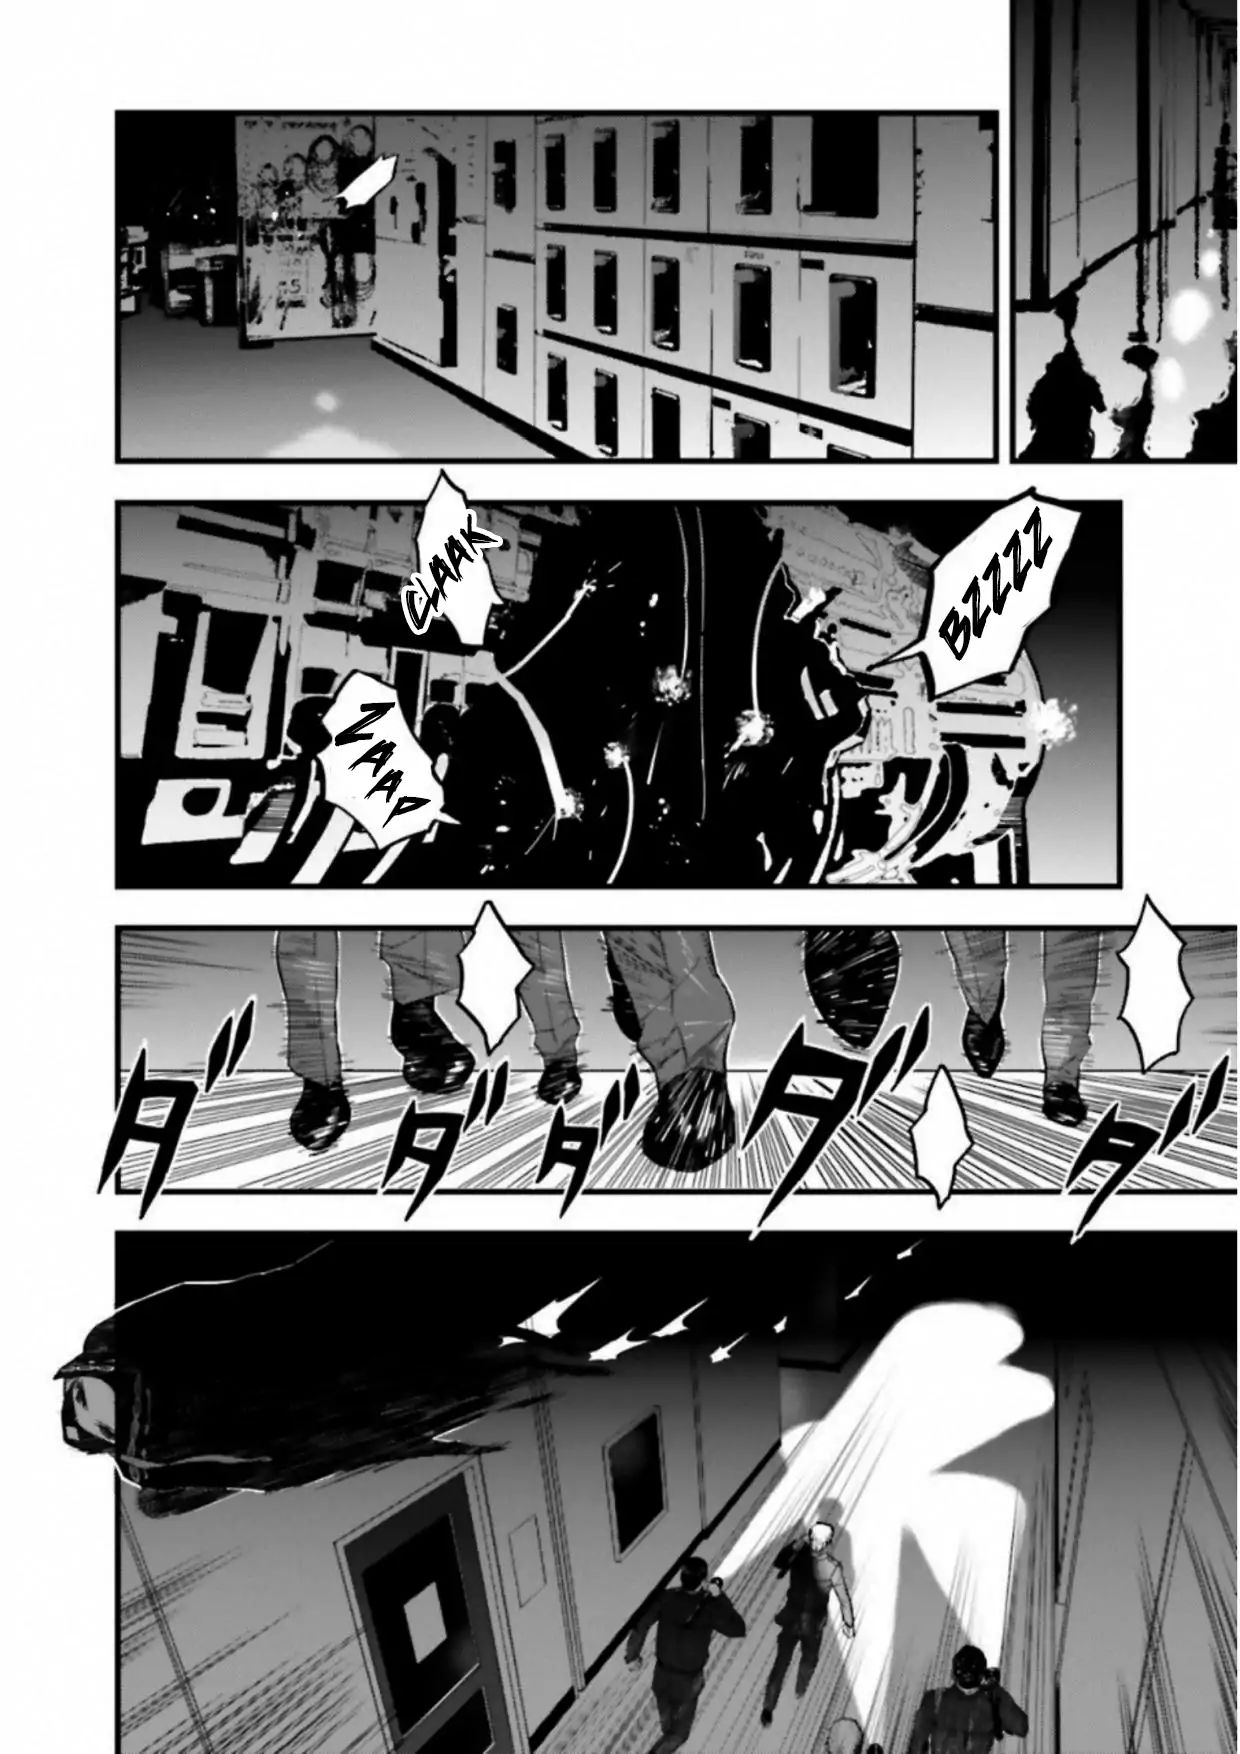 Fate/strange Fake - Page 3